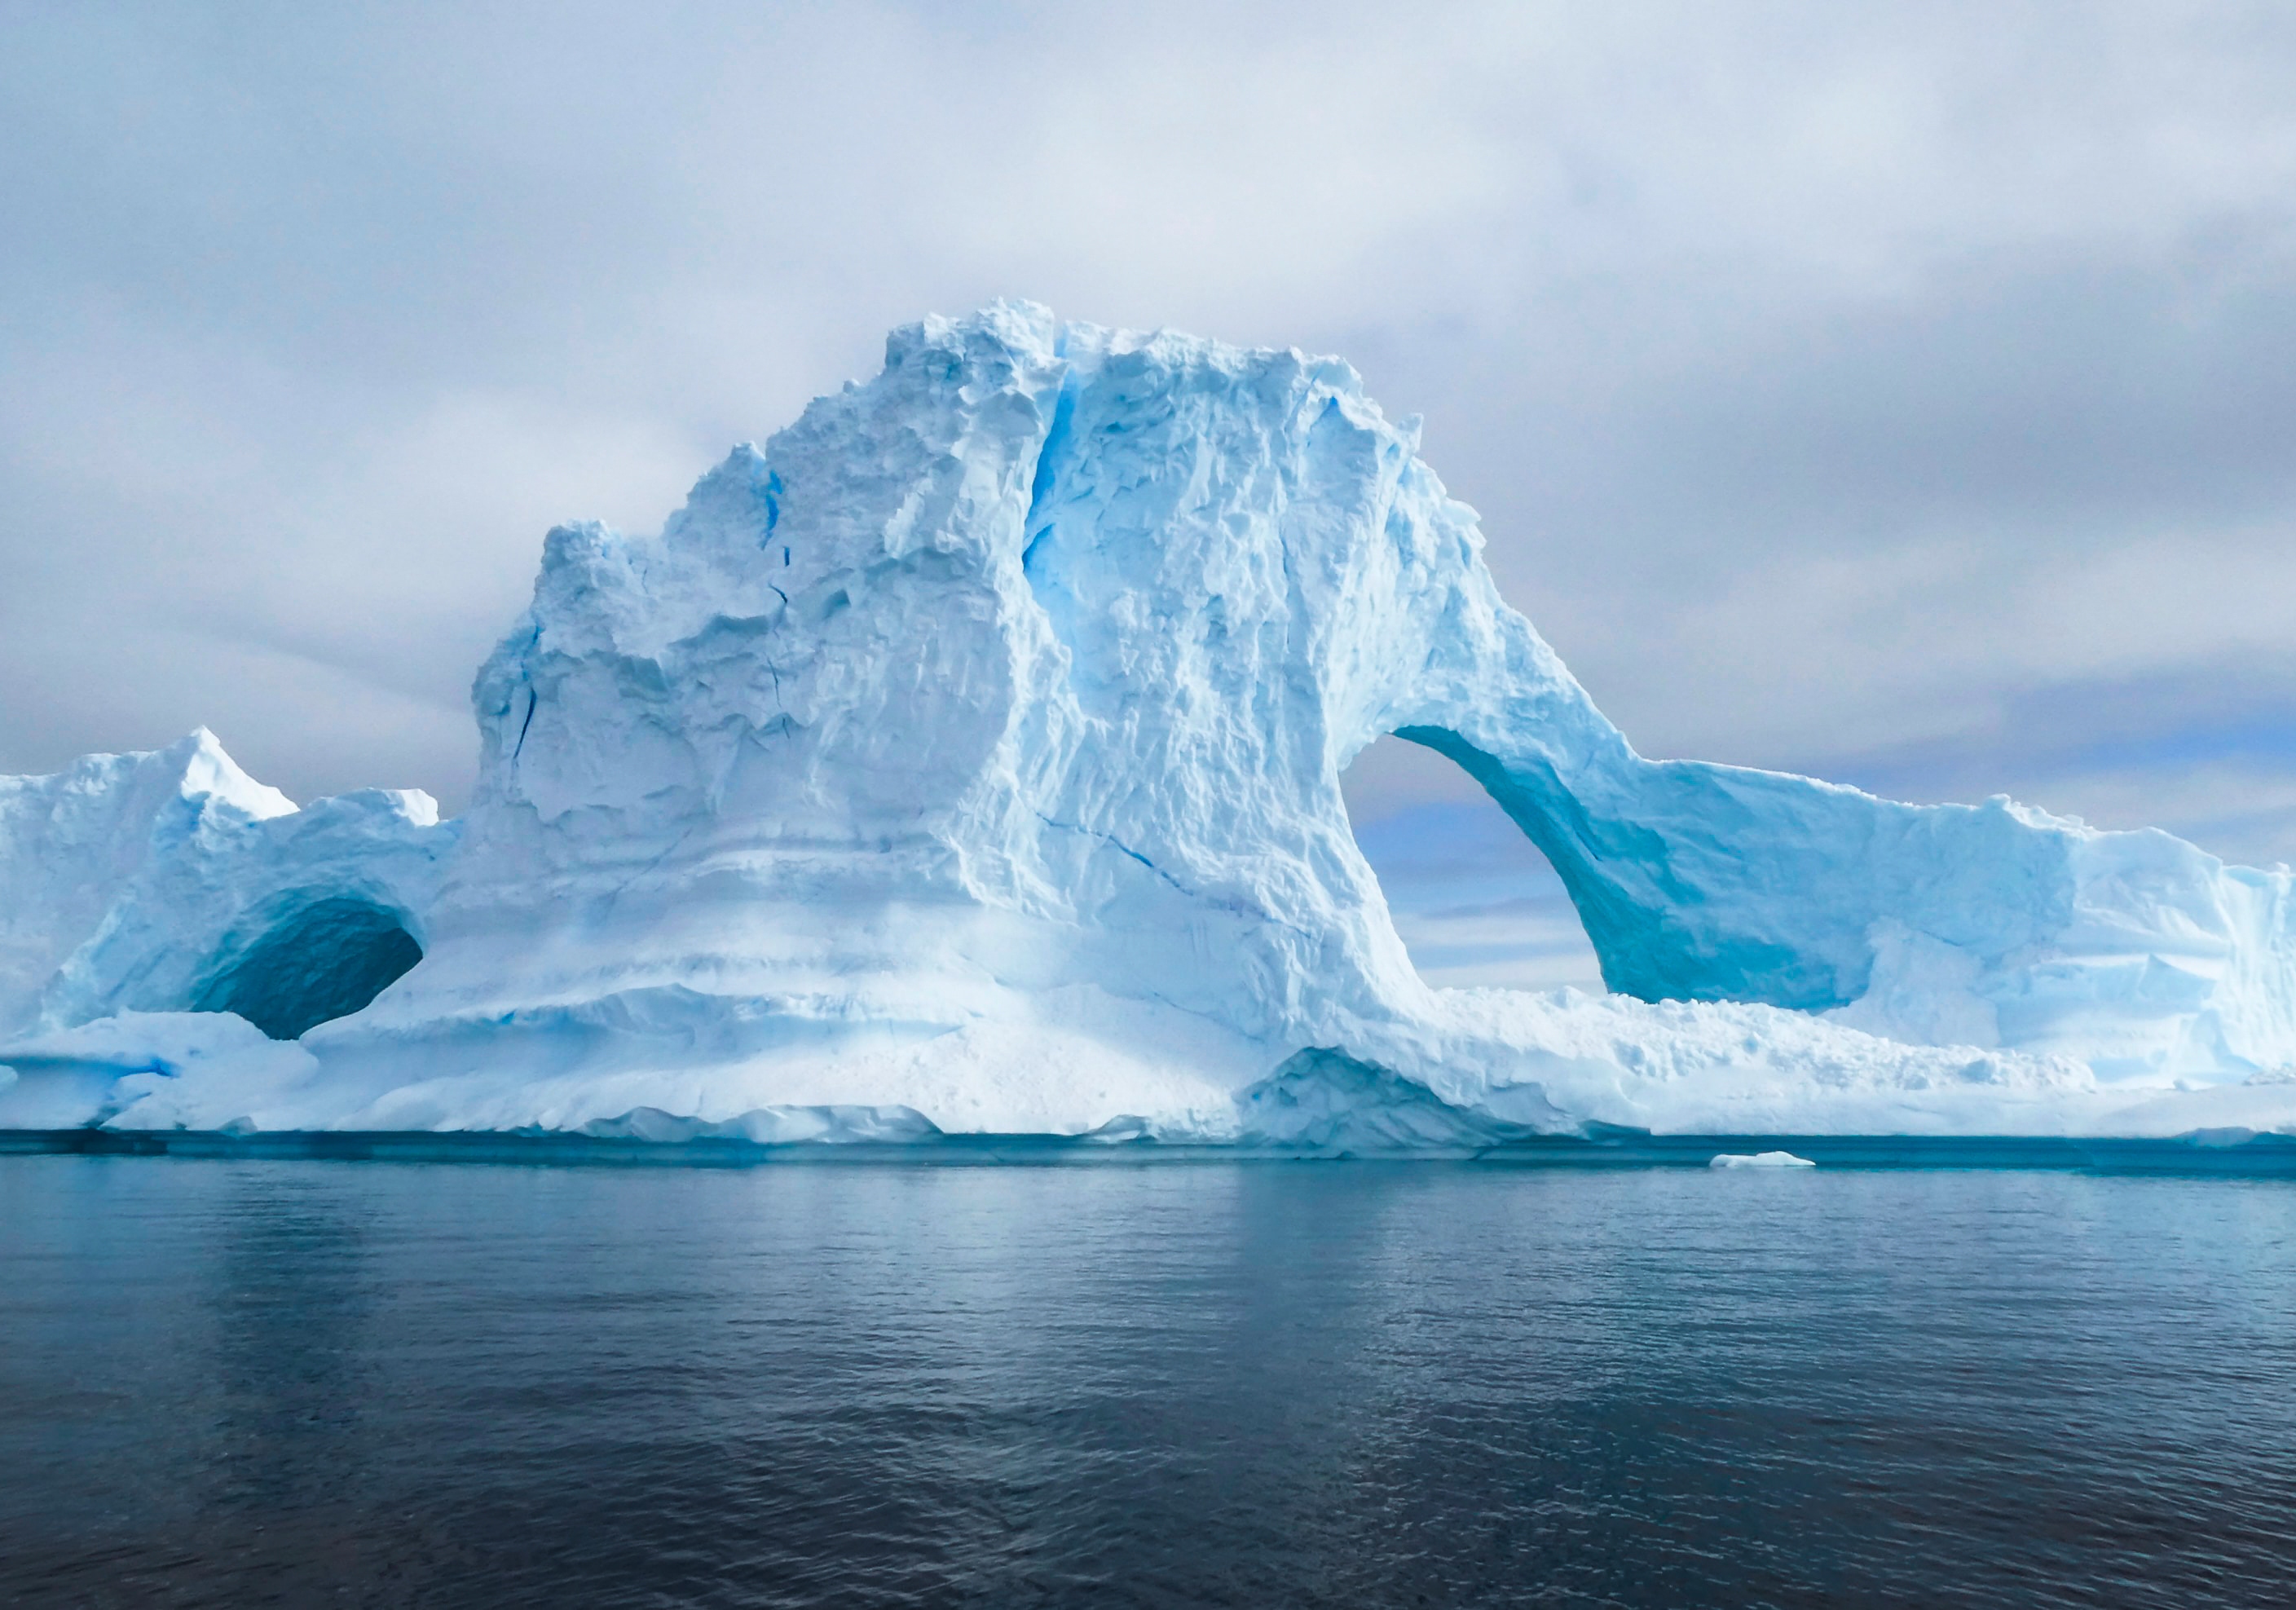 Un aisberg desprins din Antarctica a eliberat 150 de miliarde de tone de apă. Va modifica substanțial ecosistemul